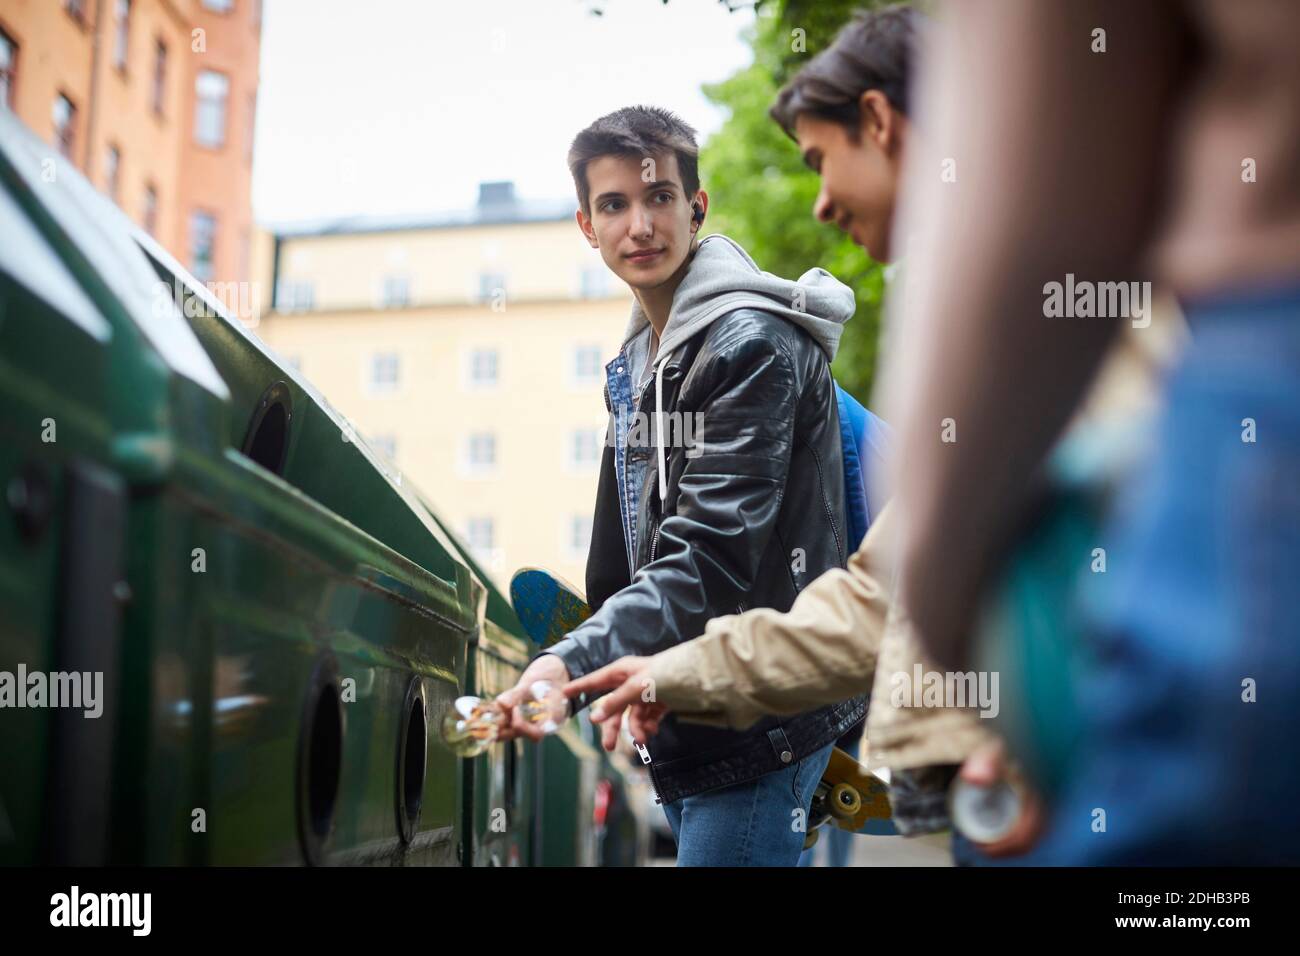 Teenage-Junge, der Freund ansieht, während er Abfall in den Müll wirft Behälter an der Recyclingstation Stockfoto